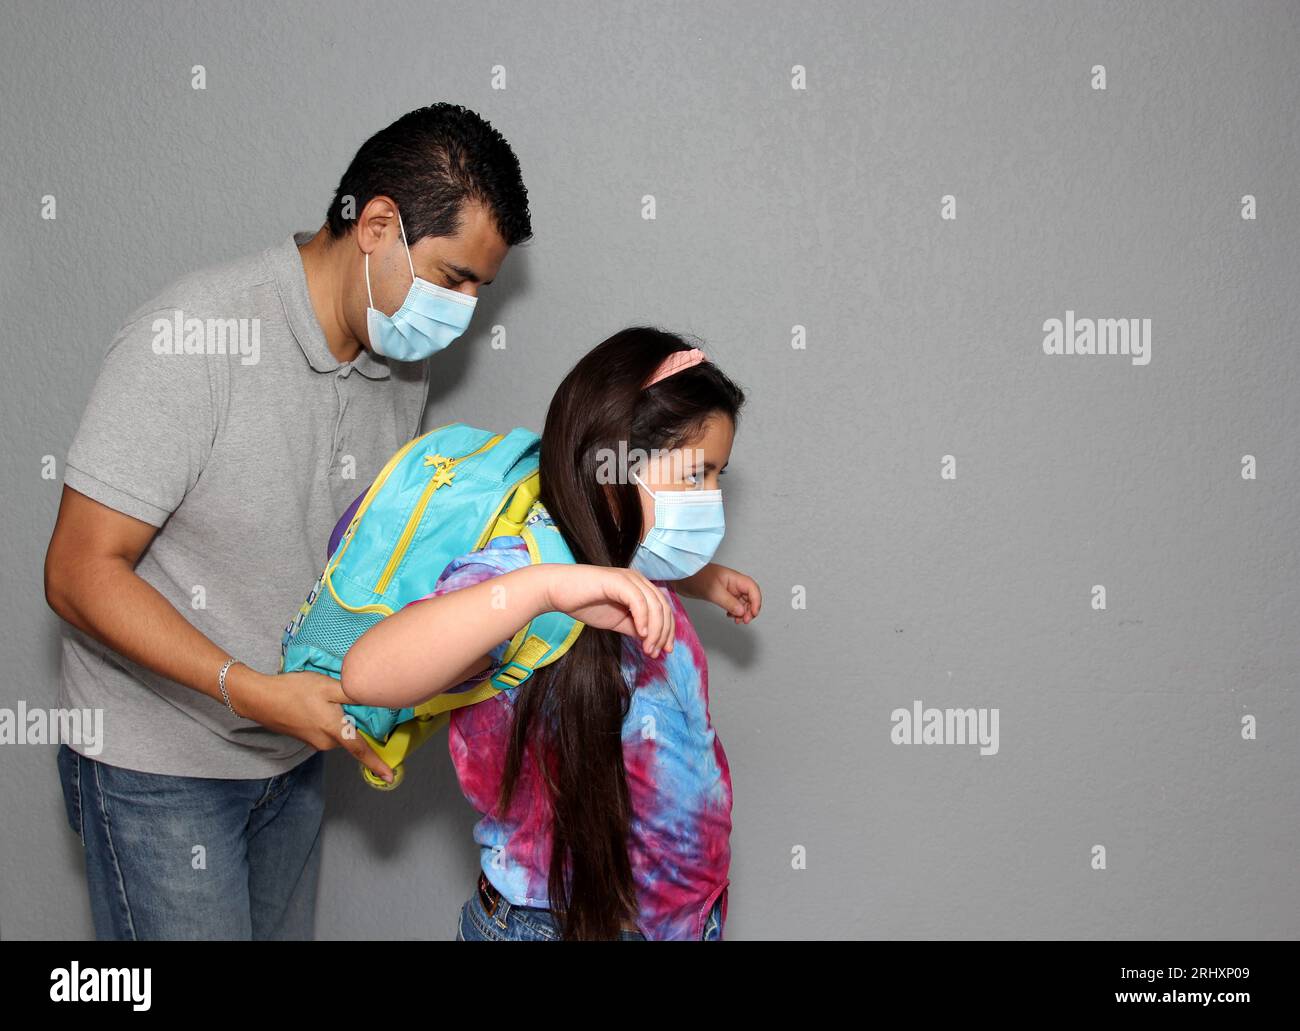 Père et fille latinos avec des masques faciaux et un sac à dos prêts à retourner à l’école dans la nouvelle normalité en raison de la pandémie de Covid-19 Banque D'Images